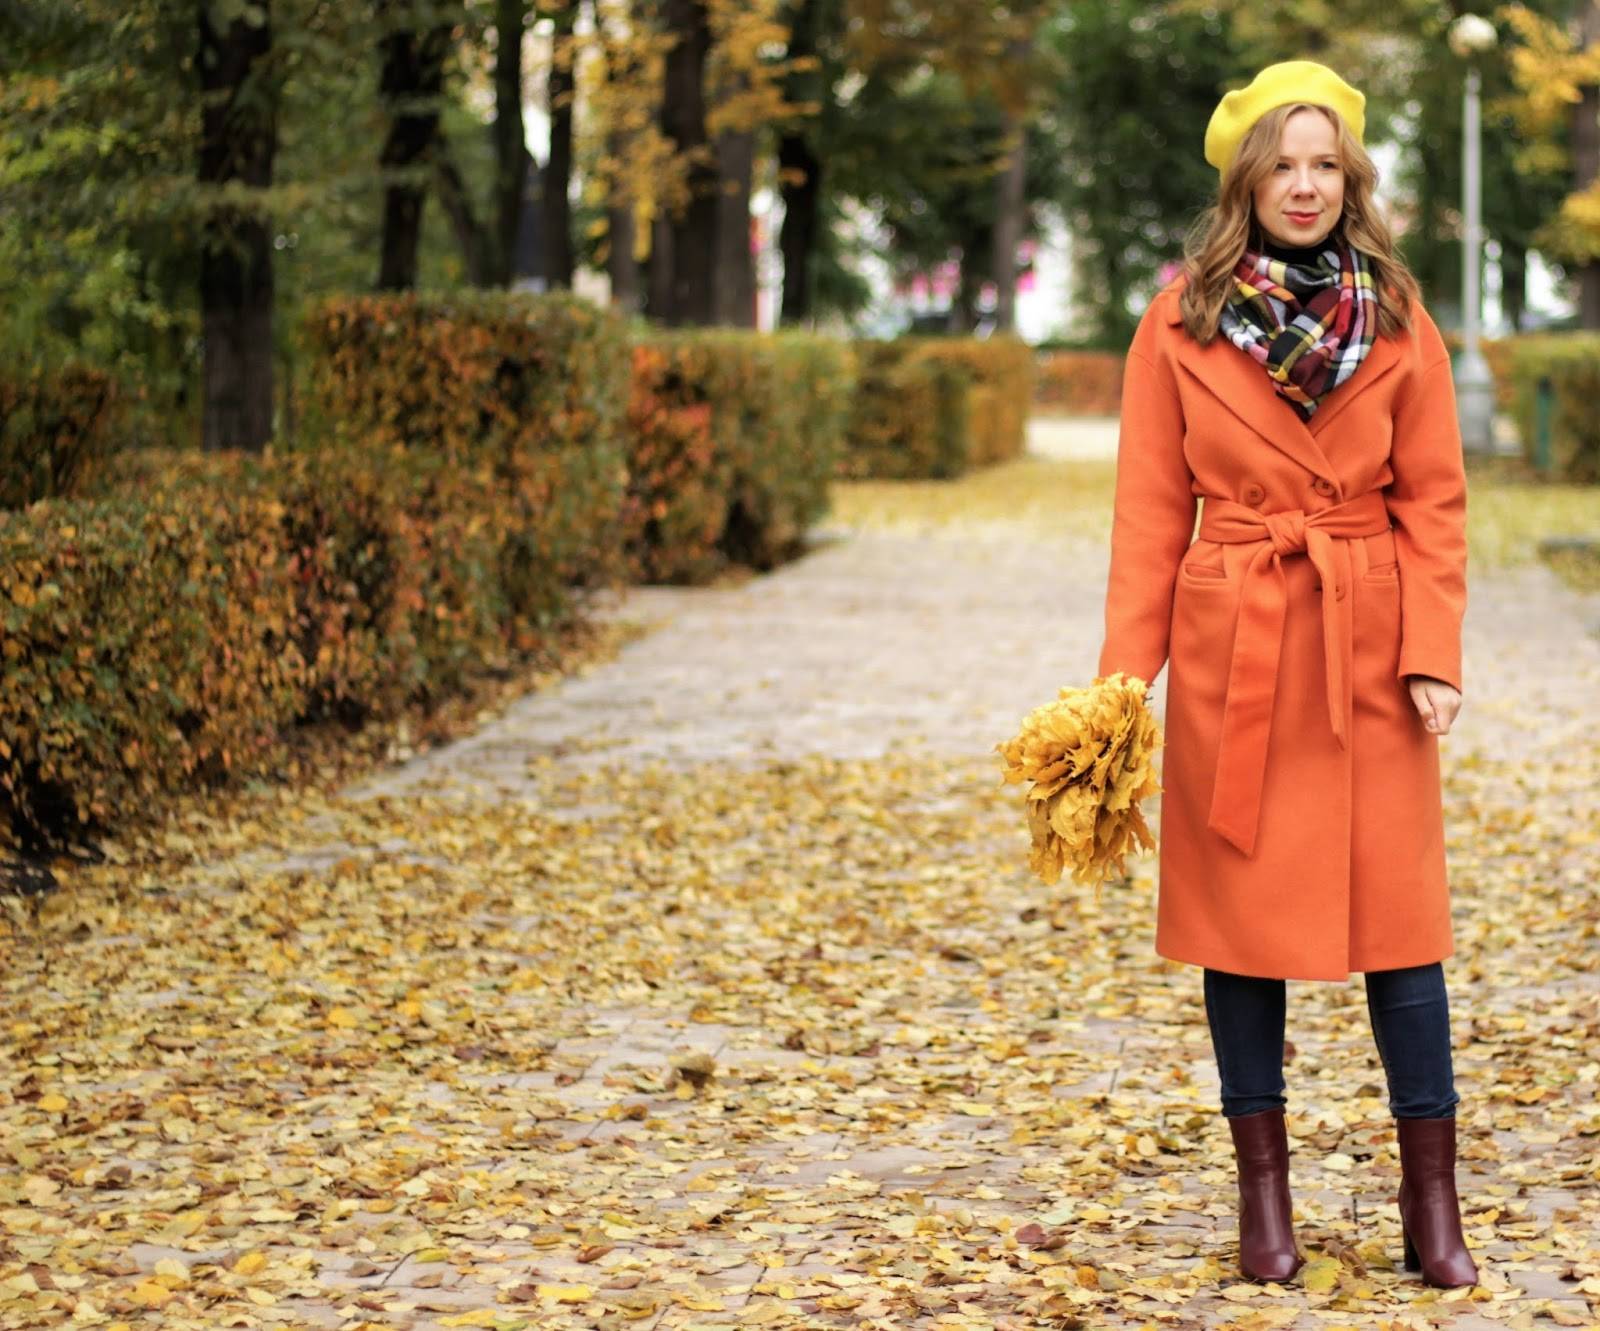 Обзор лучших моделей пальто от европейских и российских брендов с описанием характеристик